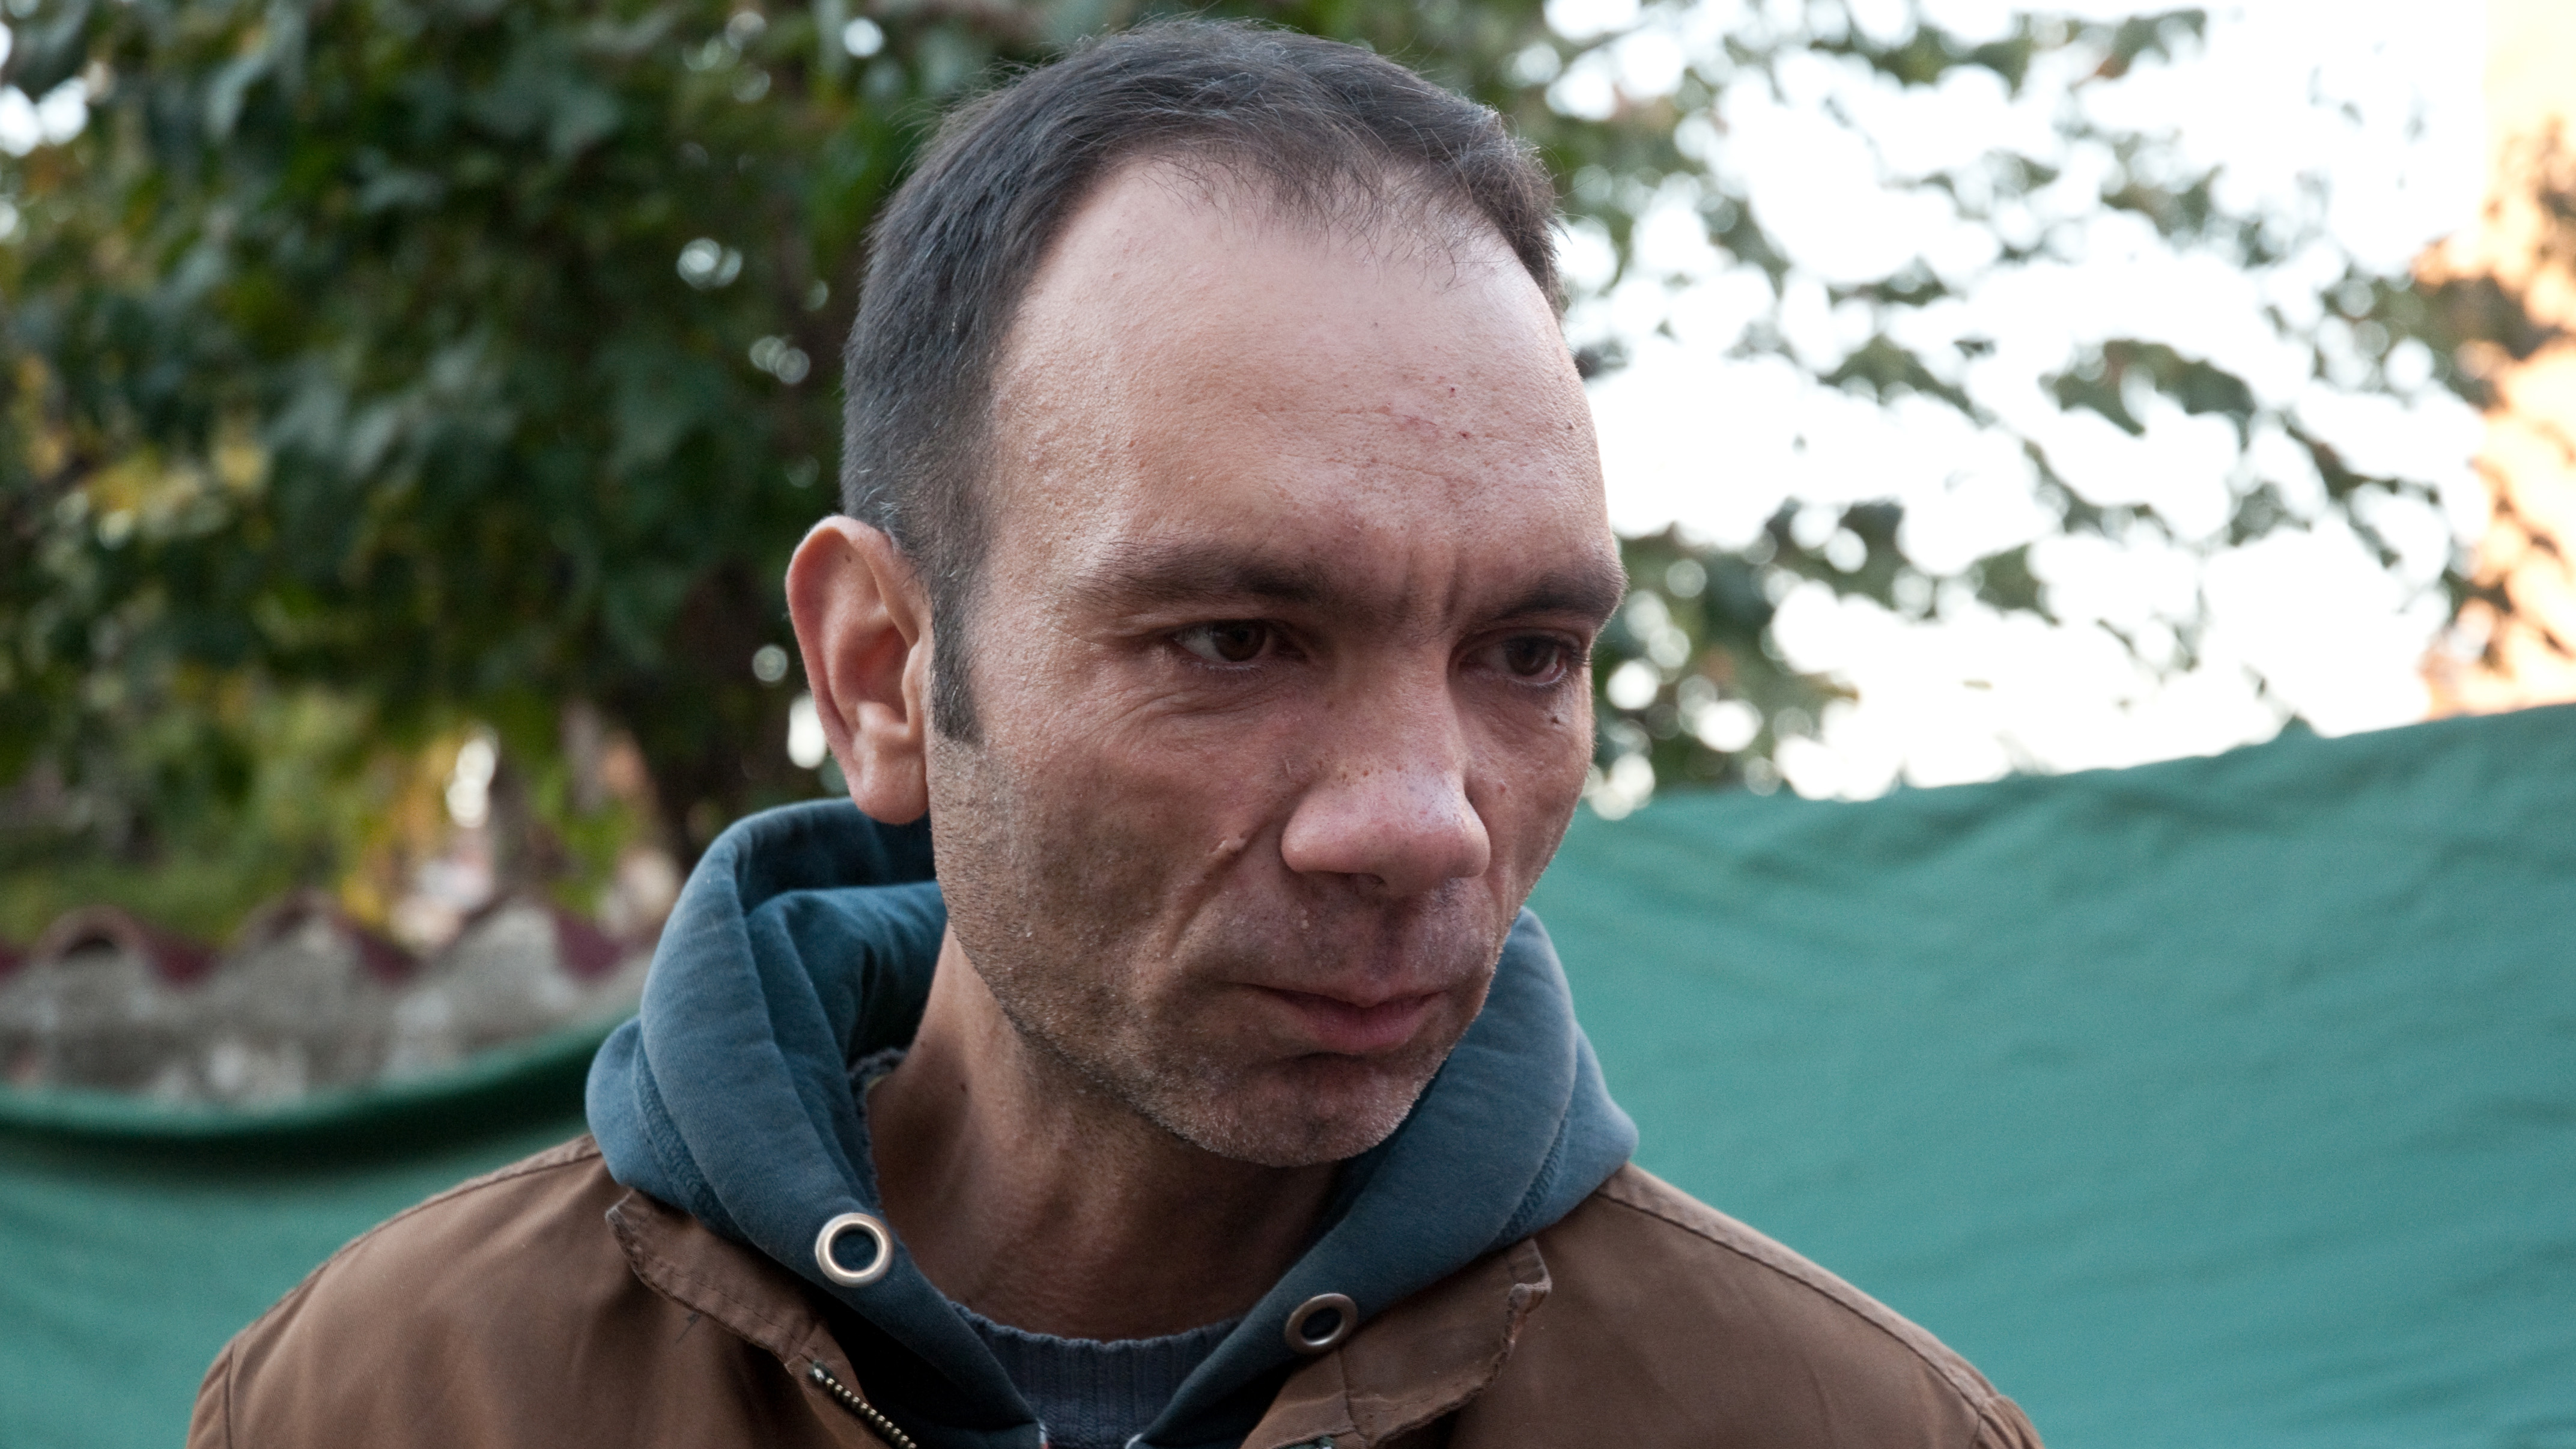 Cristi, fratele Mariei Ion, a vorbit pentru Cancan.ro despre situatia in care se afla acum familia acesteia